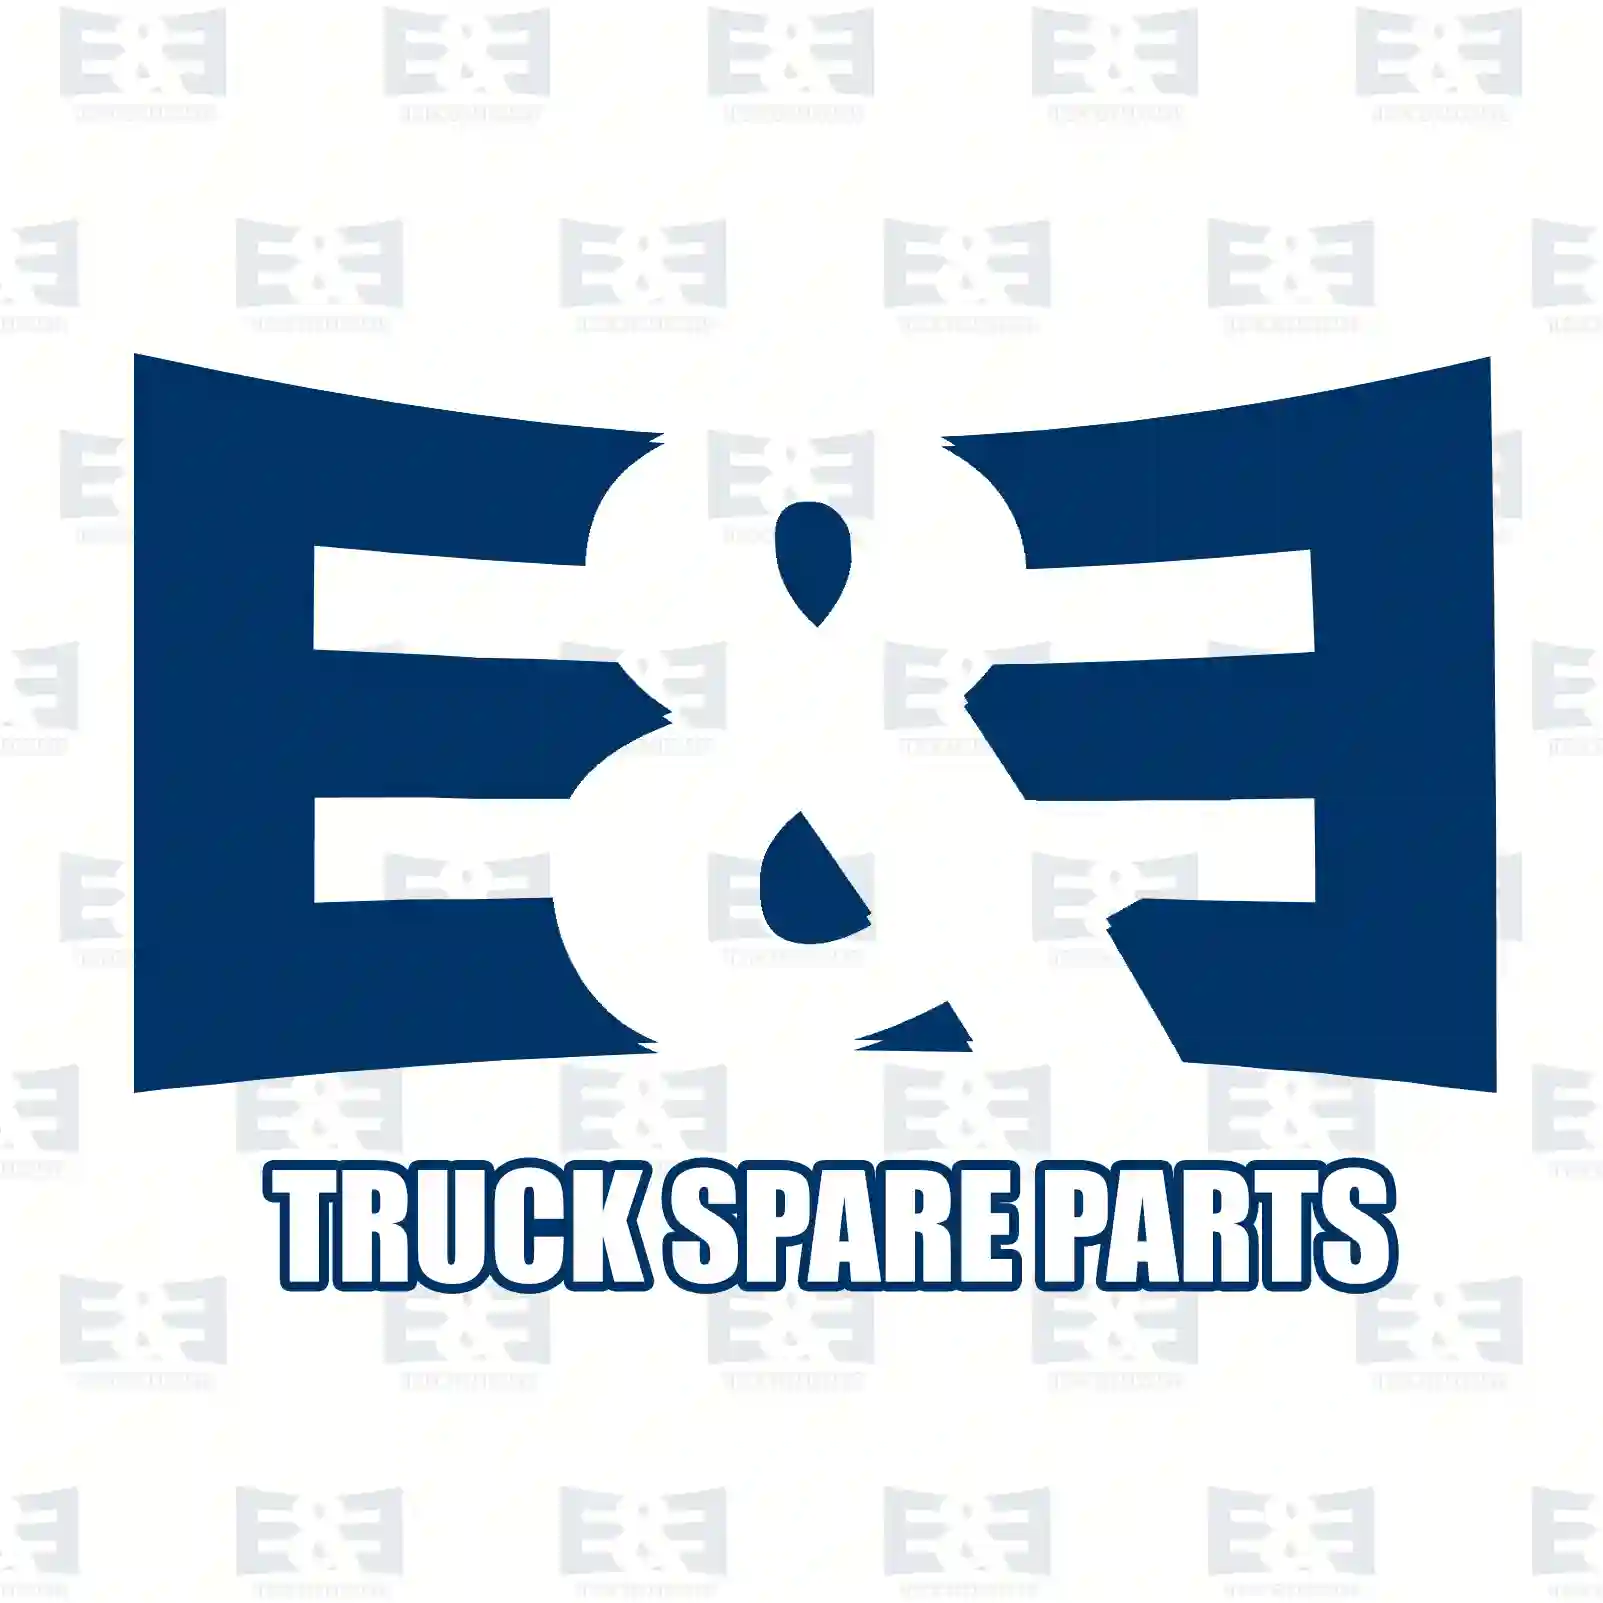 Bushing, 2E2296383, 7401517531, 1517531, ZG50323-0008 ||  2E2296383 E&E Truck Spare Parts | Truck Spare Parts, Auotomotive Spare Parts Bushing, 2E2296383, 7401517531, 1517531, ZG50323-0008 ||  2E2296383 E&E Truck Spare Parts | Truck Spare Parts, Auotomotive Spare Parts